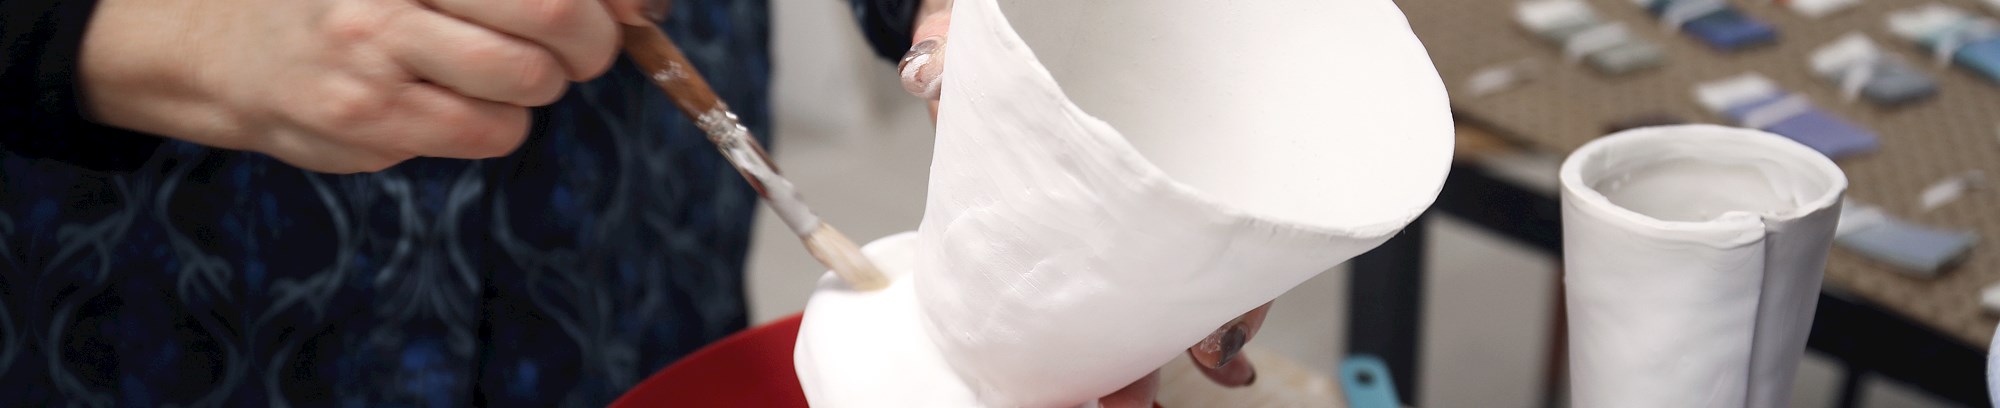 Lær at lave keramik i FOF